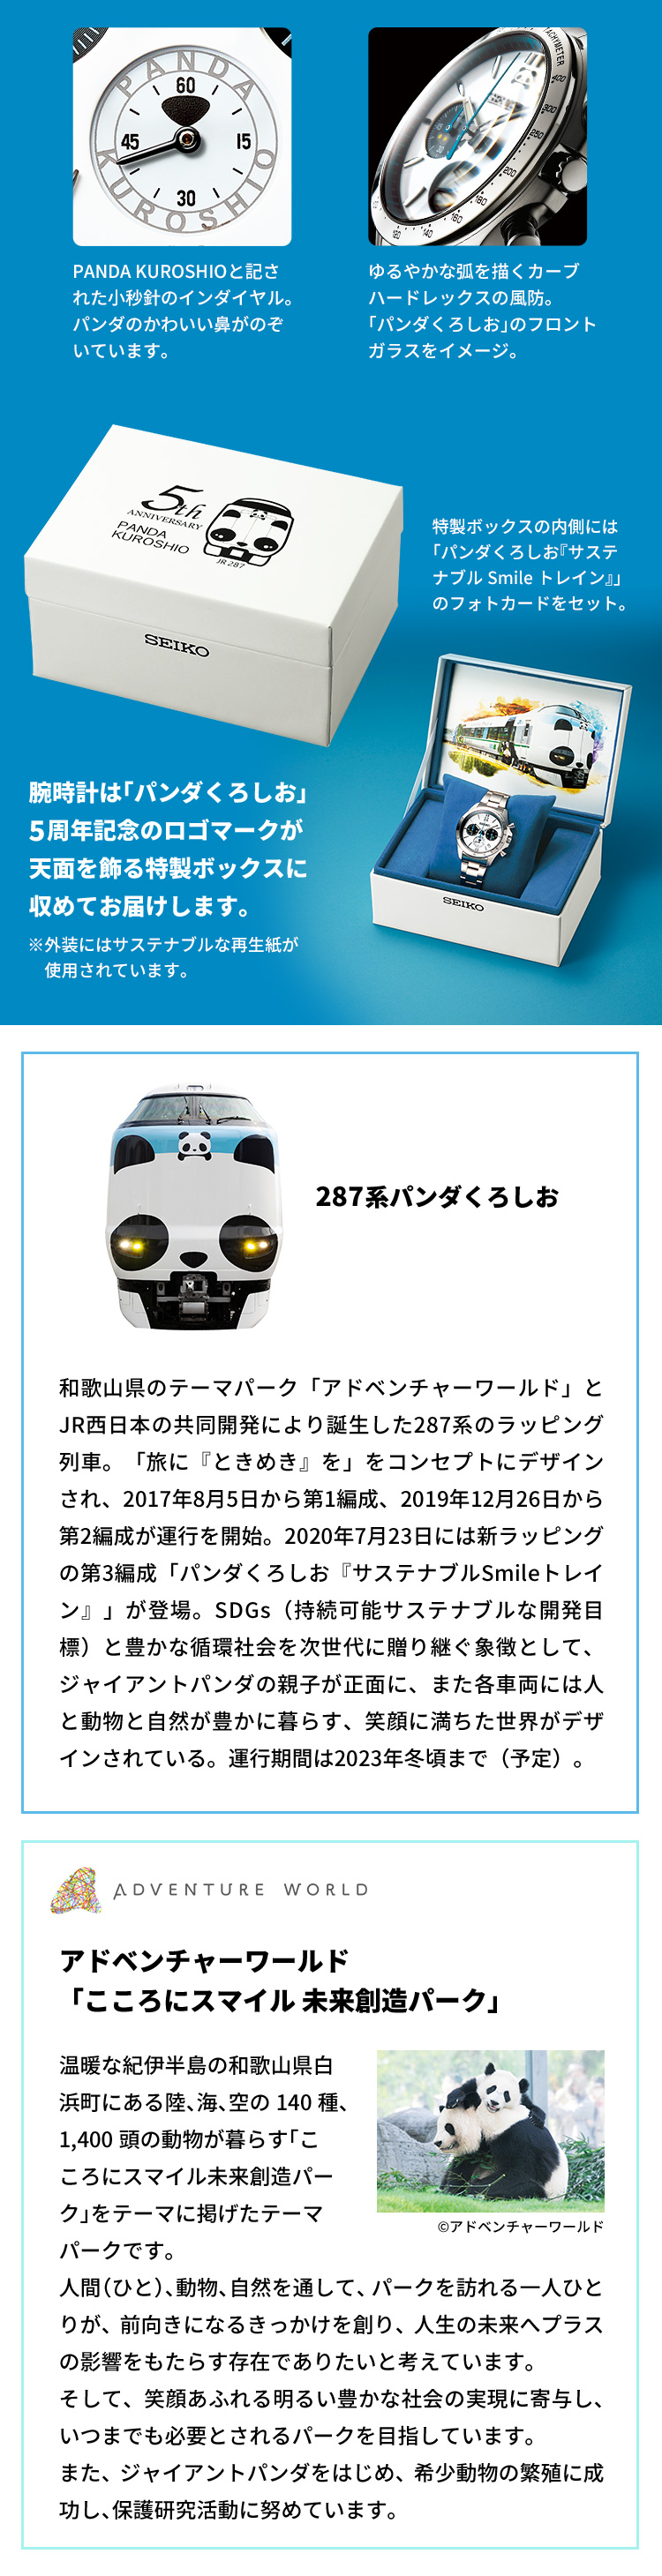 287系パンダくろしお：和歌山県のテーマパーク「アドベンチャーワールド」とJR西日本の共同開発により誕生した287系のラッピング列車。「旅に『ときめき』を」をコンセプトにデザインされ、2017年8月5日から第1編成、2019年12月26日から第2編成が運行を開始。2020年7月23日には新ラッピングの第3編成「パンダくろしお『サステナブルSmileトレイン』」が登場。SDGs（持続可能サステナブルな開発目標）と豊かな循環社会を次世代に贈り継ぐ象徴として、ジャイアントパンダの親子が正面に、また各車両には人と動物と自然が豊かに暮らす、笑顔に満ちた世界がデザインされている。運行期間は2023年冬頃まで（予定）。